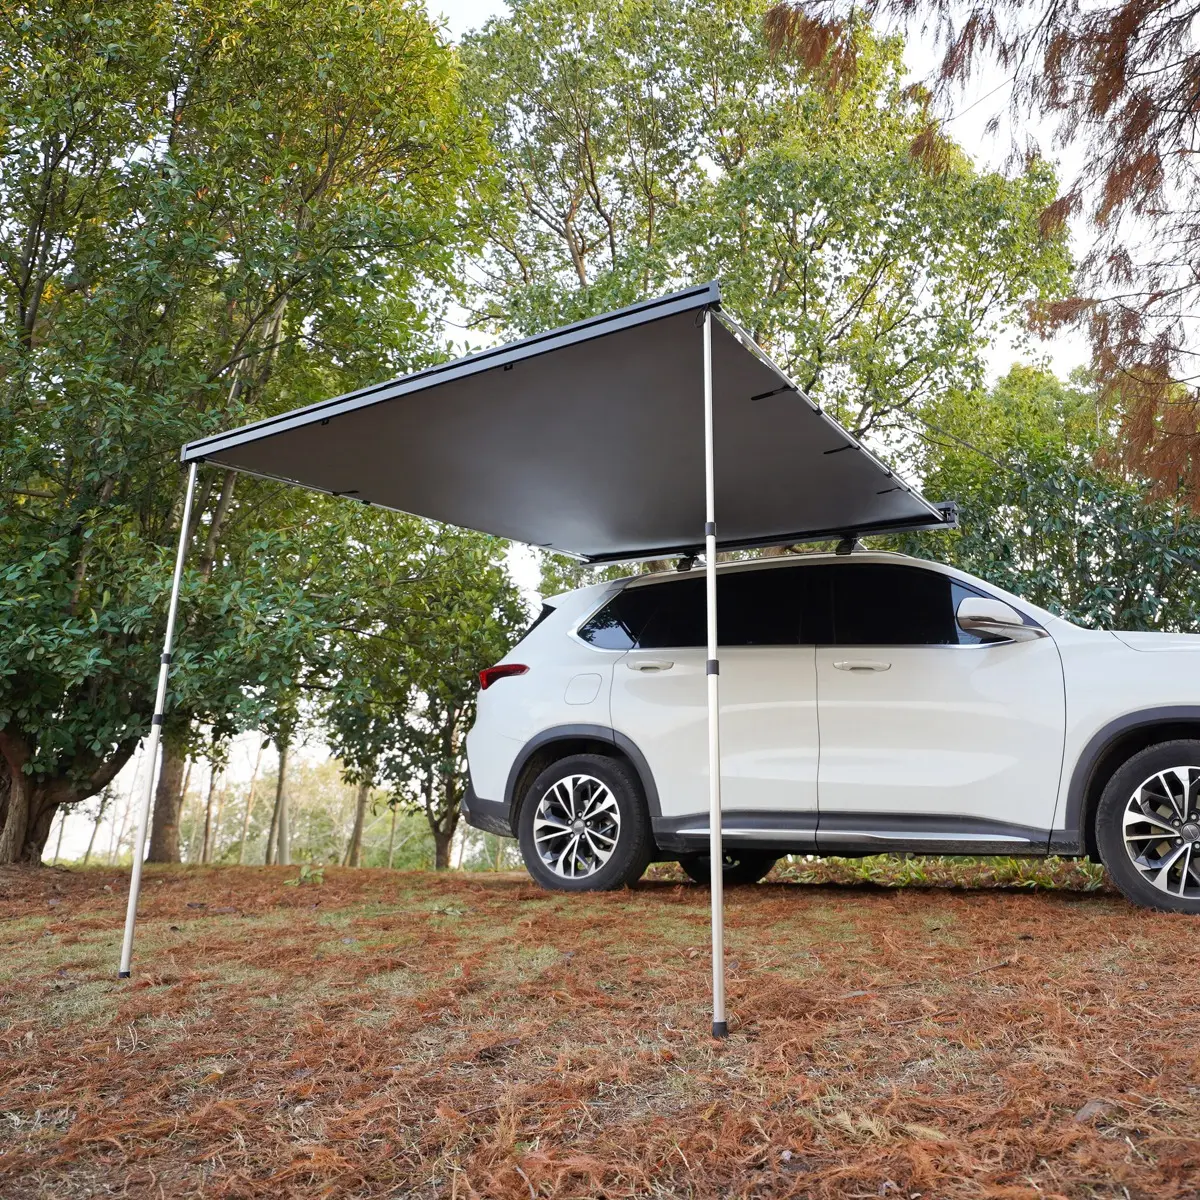 Yescampro custodia in alluminio camion campeggio campeggio tetto auto outdoor 4x4 4wd tenda da sole per suv